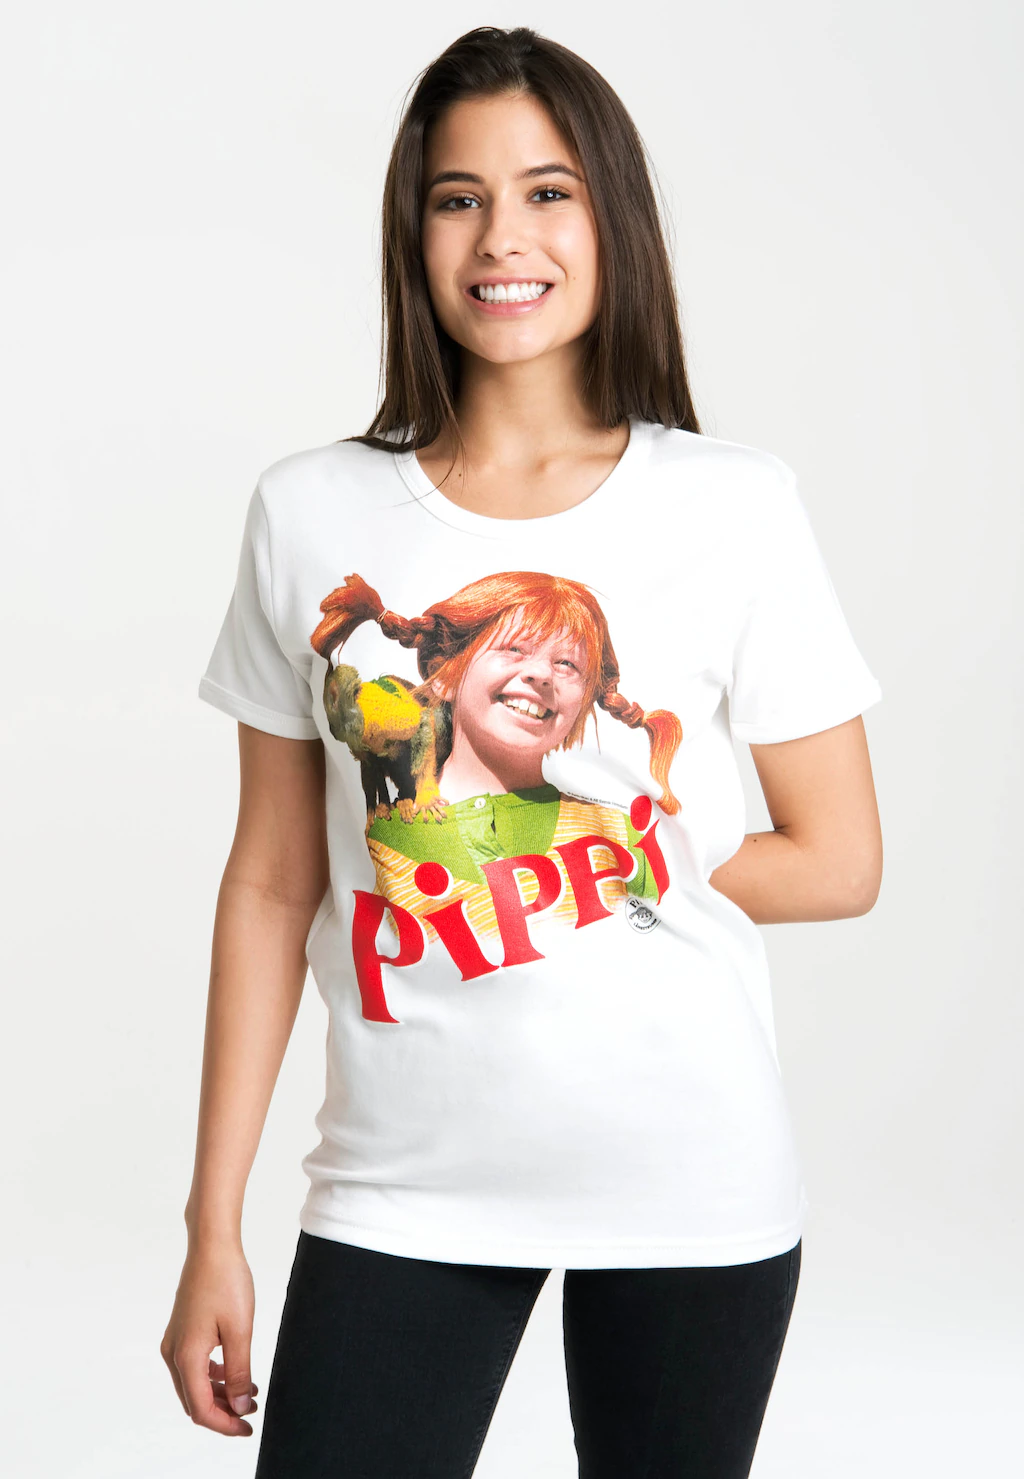 LOGOSHIRT T-Shirt "Pippi Langstrumpf", mit lizenziertem Originaldesign günstig online kaufen